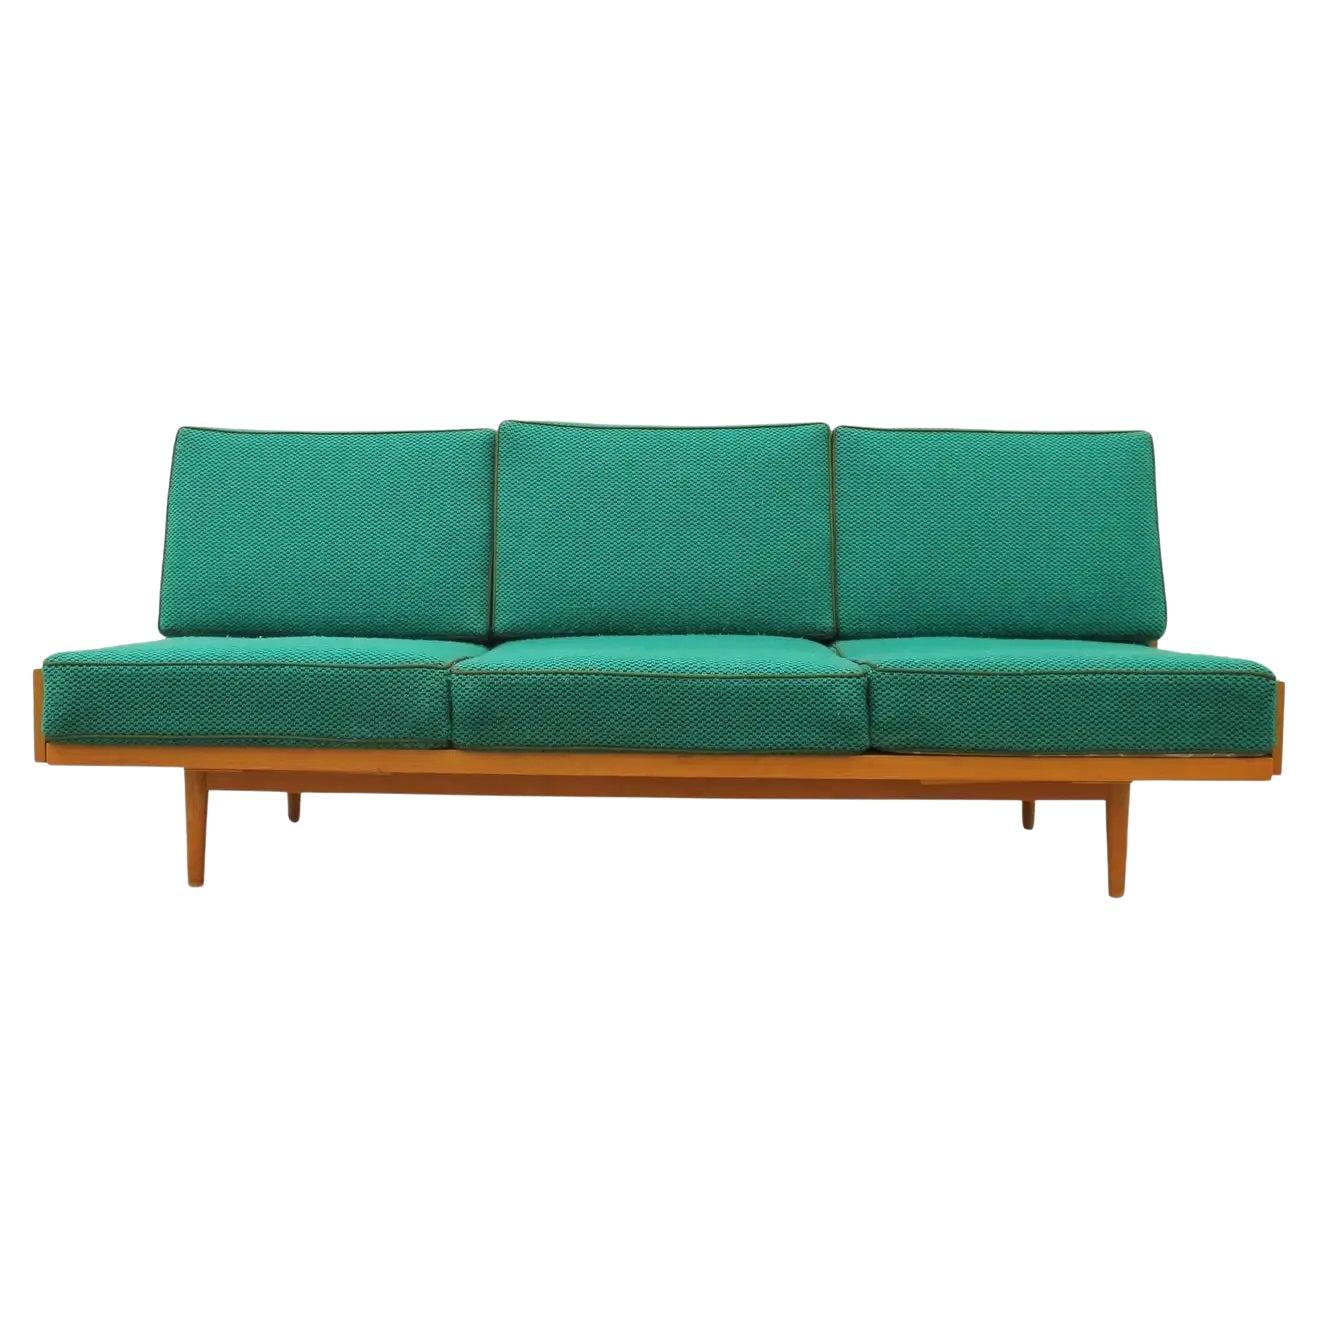 Schlafsofa aus der Mitte des Jahrhunderts, hergestellt in der ehemaligen Tschechoslowakei in den 1970er Jahren. Das Sofa hat eine Struktur aus Buchenholz, es ist in sehr gutem Zustand, zeigt leichte Alters- und Gebrauchsspuren.

Länge: 200 cm

Höhe: